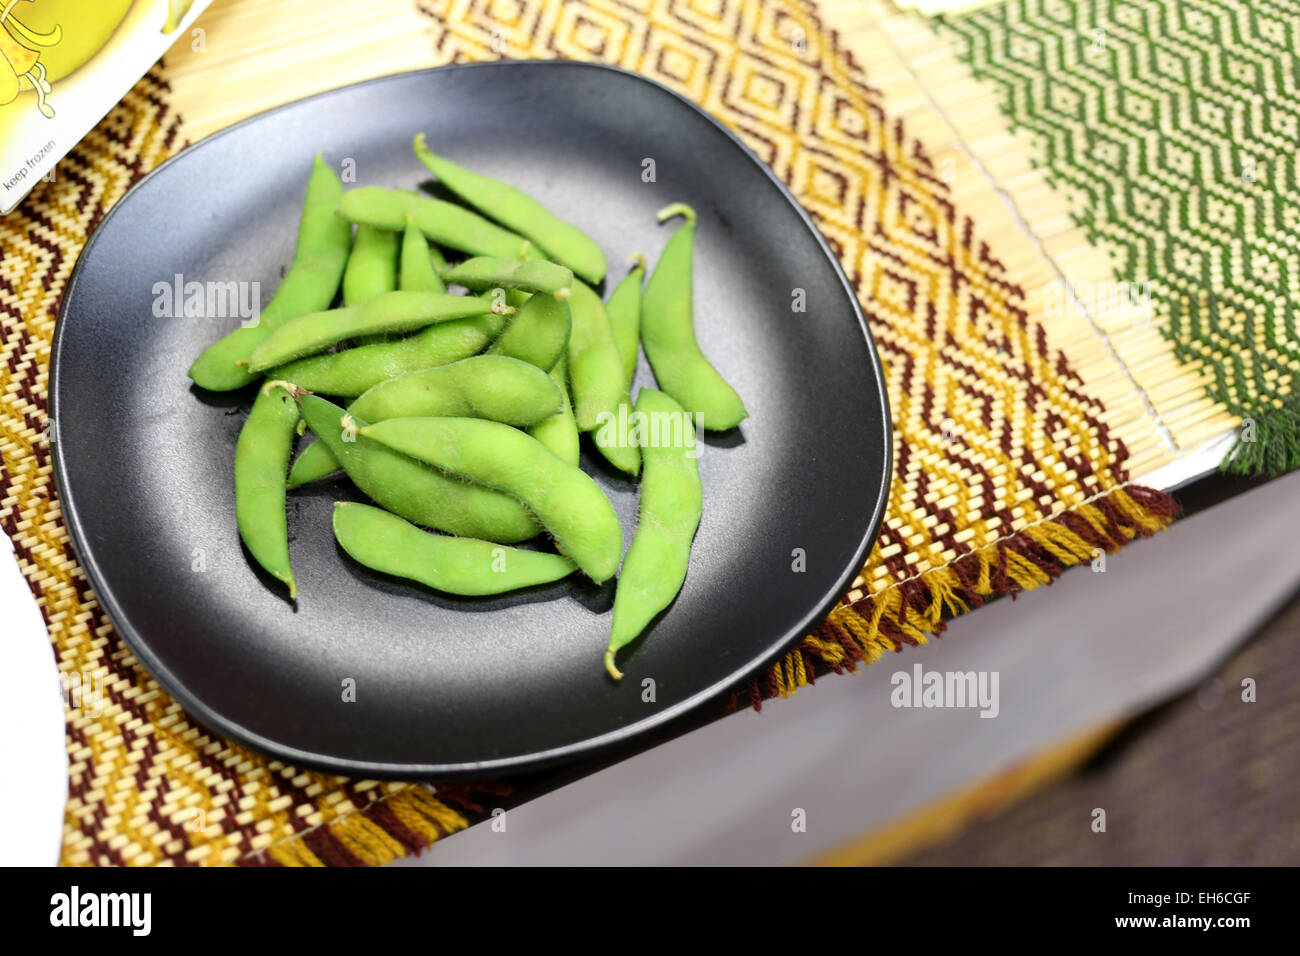 Verduras de judías verdes en el plato en un restaurante. Foto de stock